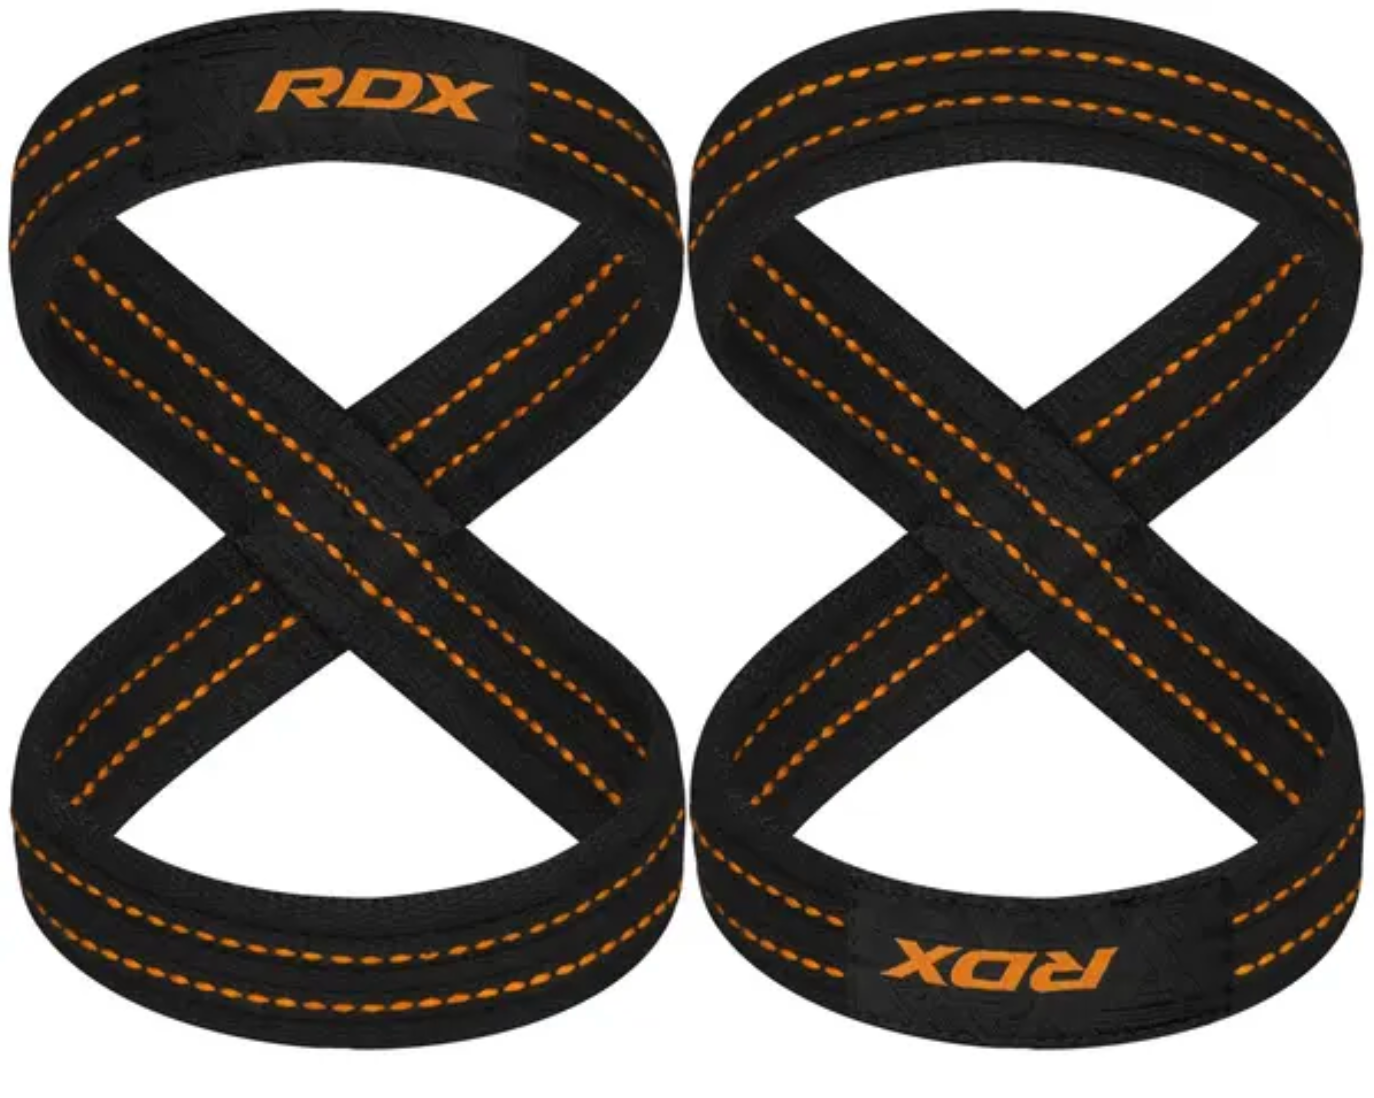 RDX - Cinturón de gimnasio de cuero levantamiento 4 Black Gold